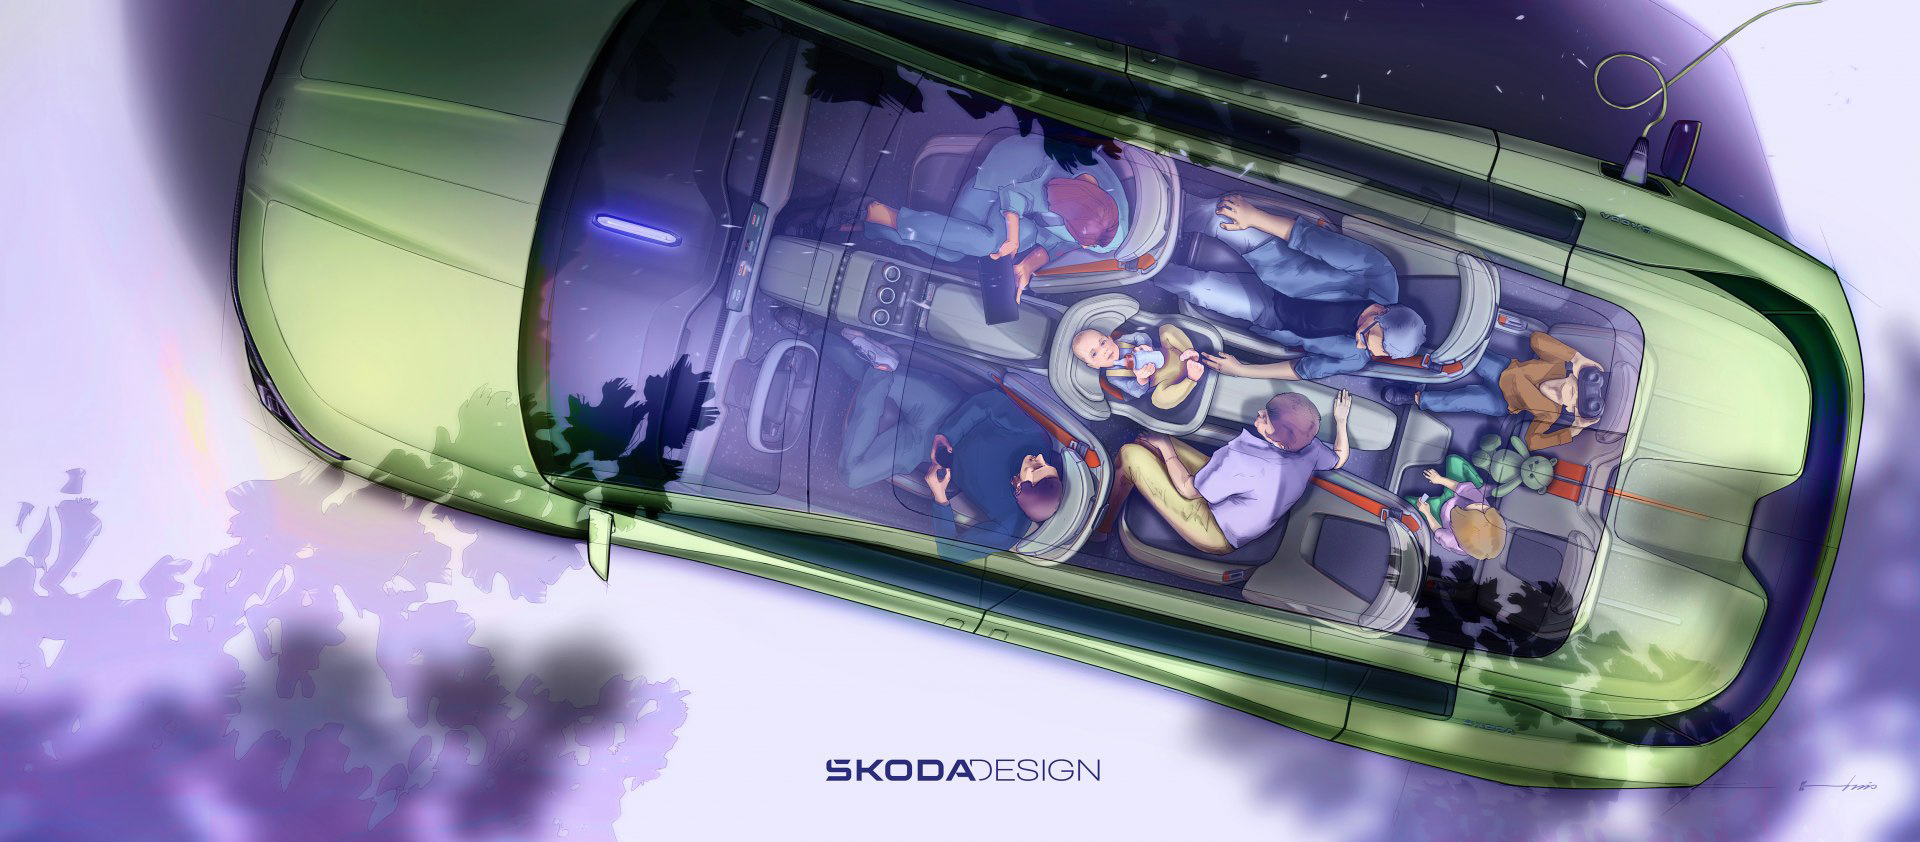 Skoda, güncellenen logosunu ve Vision 7S konseptini tanıttı